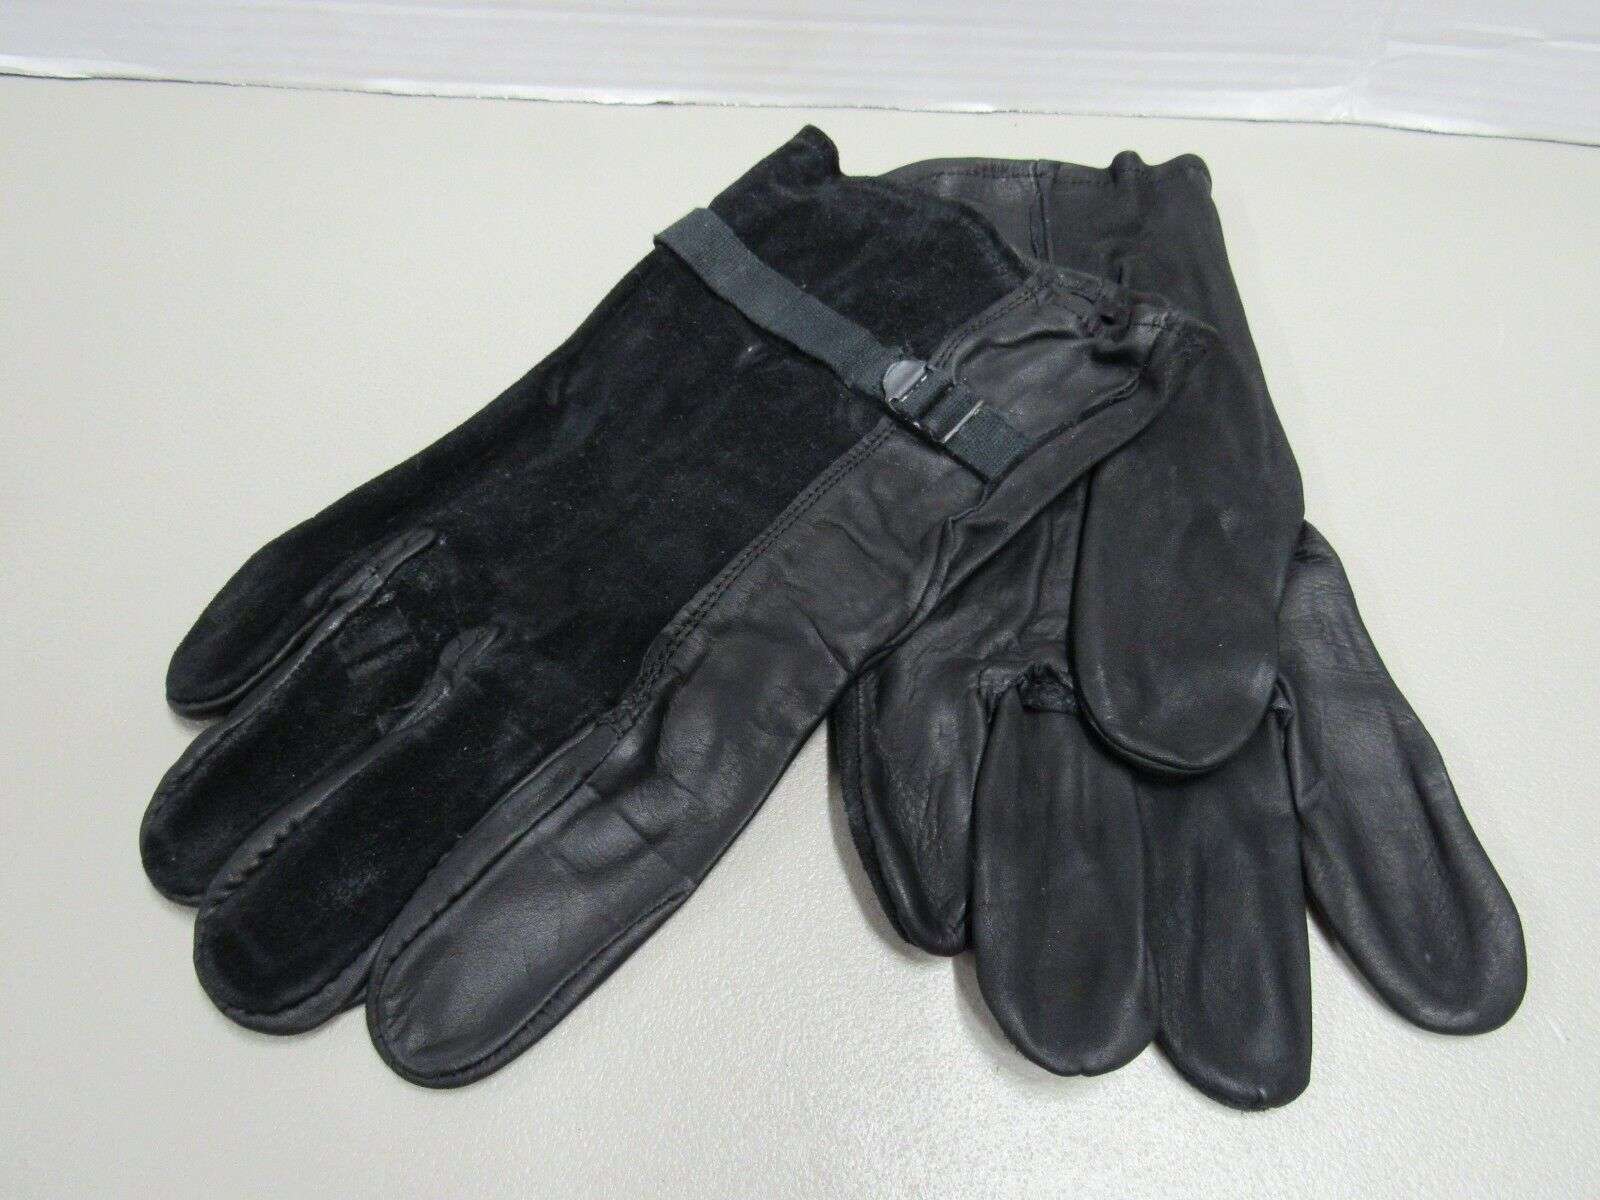 USGI leather gloves.